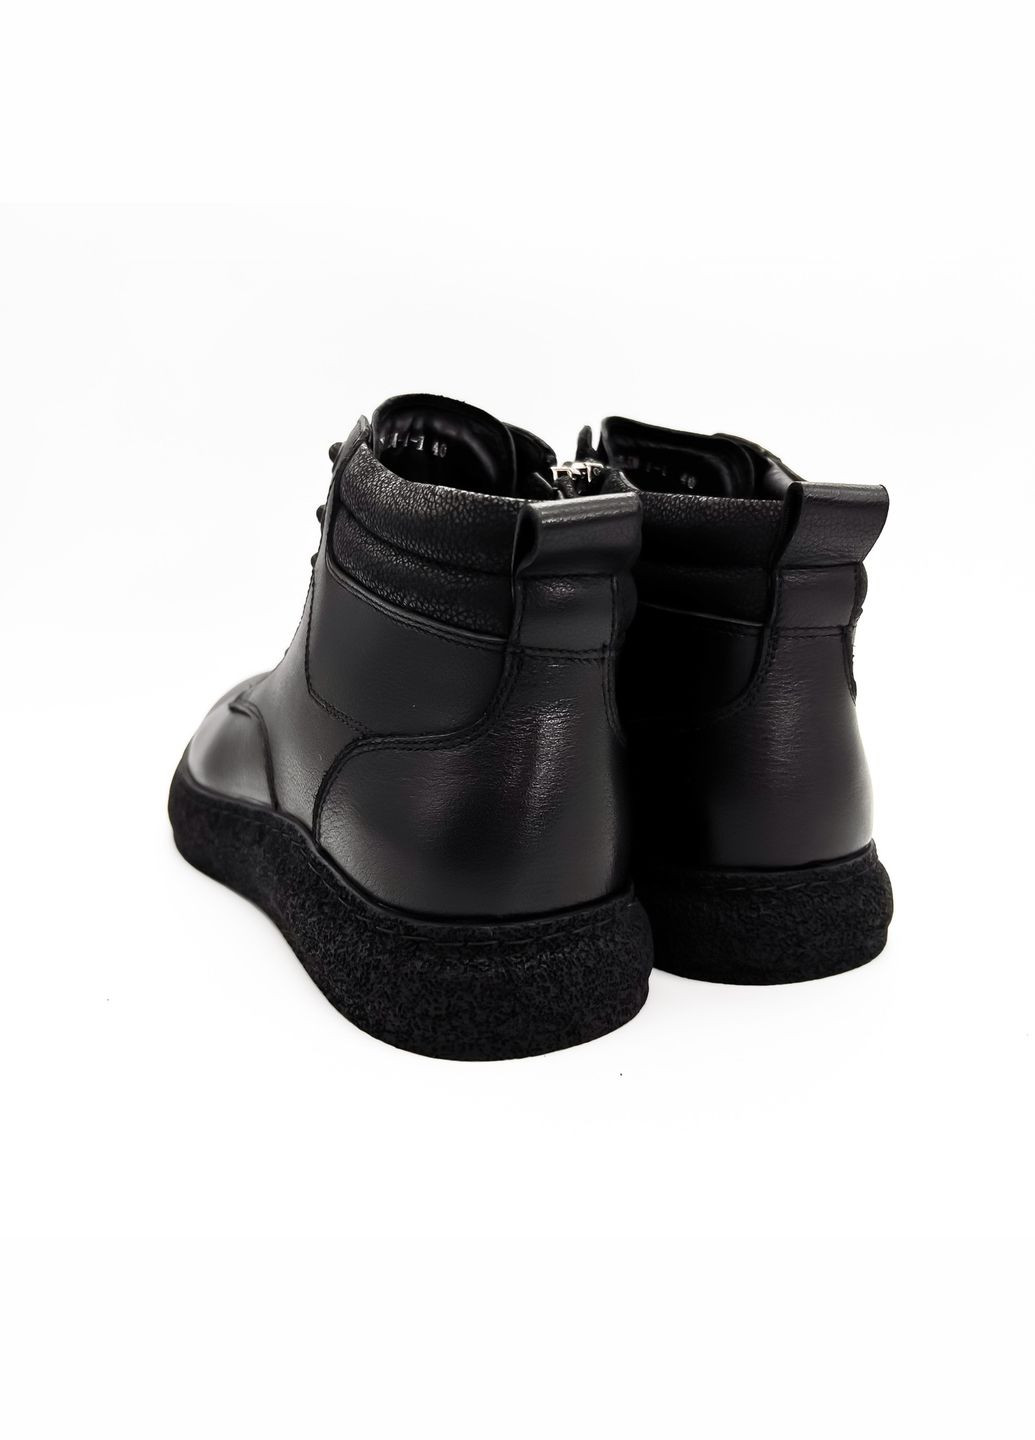 Черные зимние ботинки (р) кожа 0-2-2-am-3255m-1-1 Danler